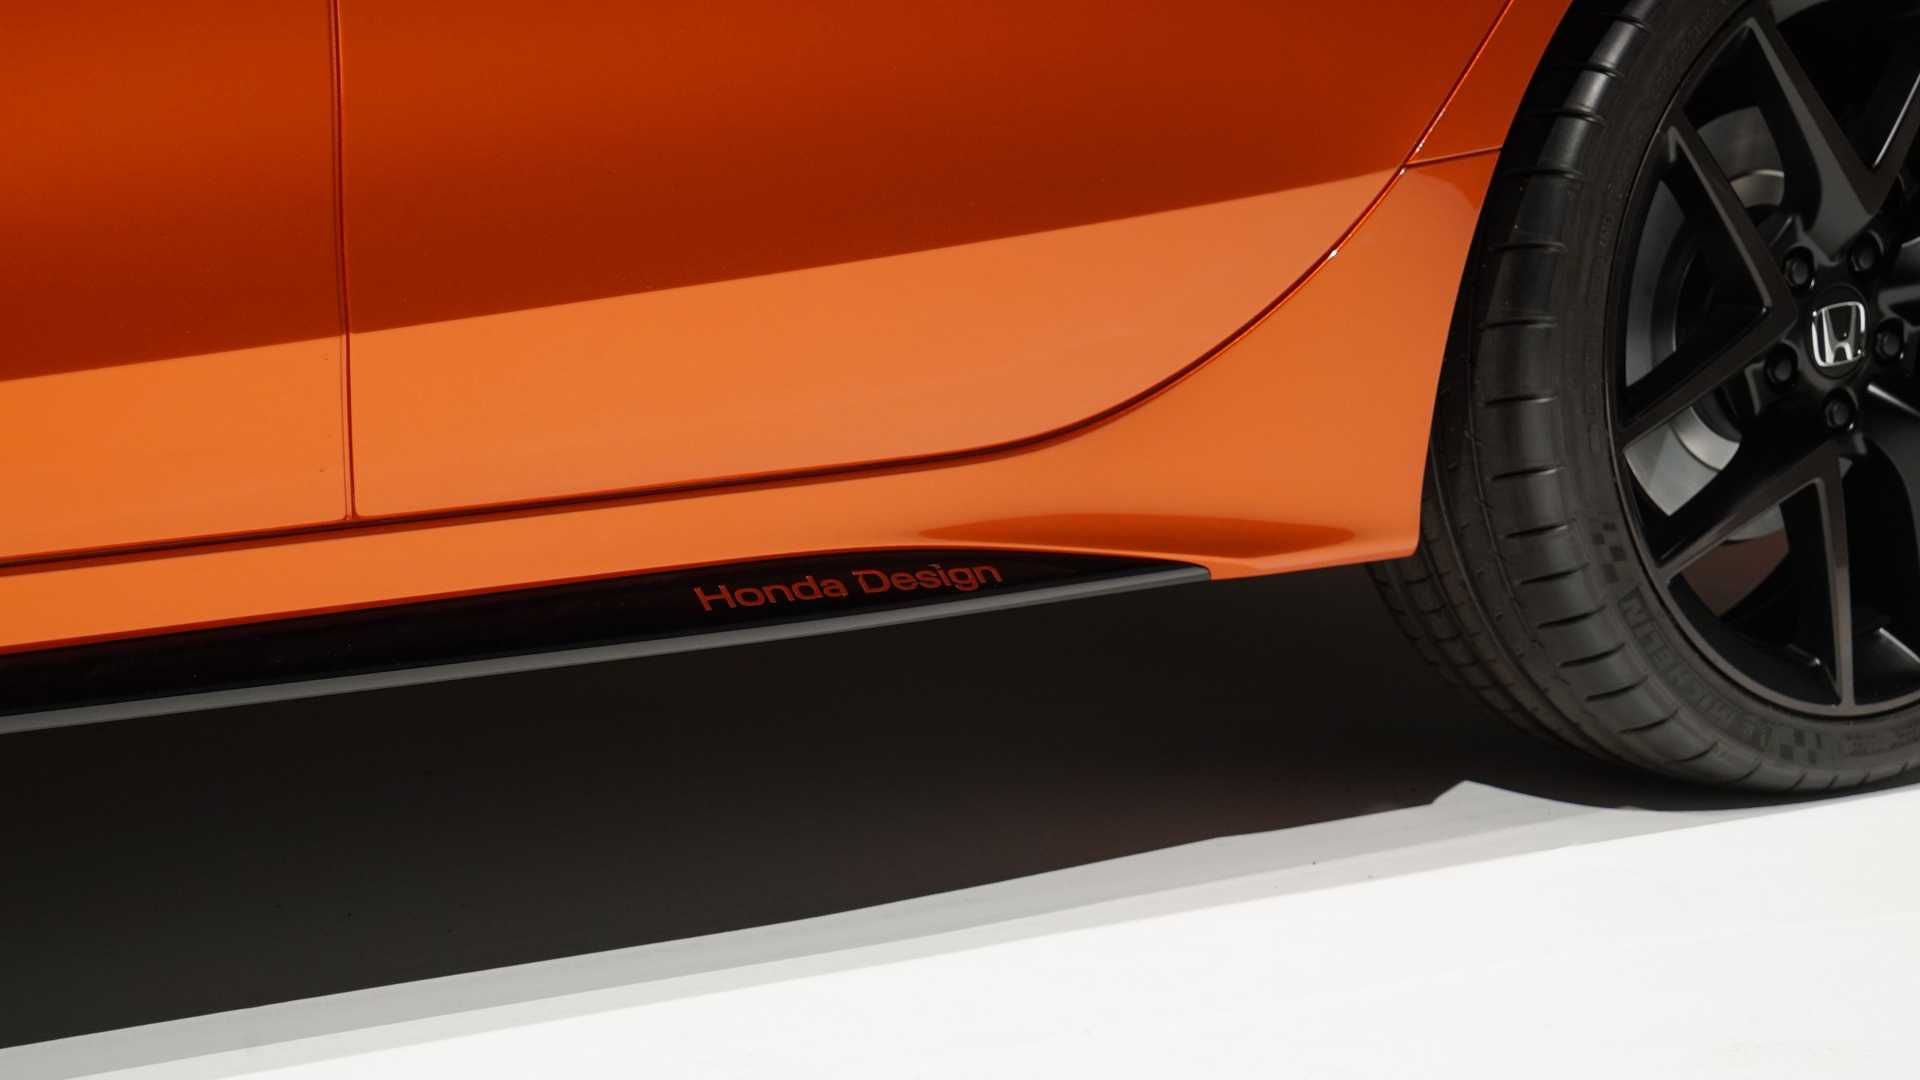 مرجع متخصصين ايران Honda Civic Prototype هوندا سيويك پروتوتايپ 2022